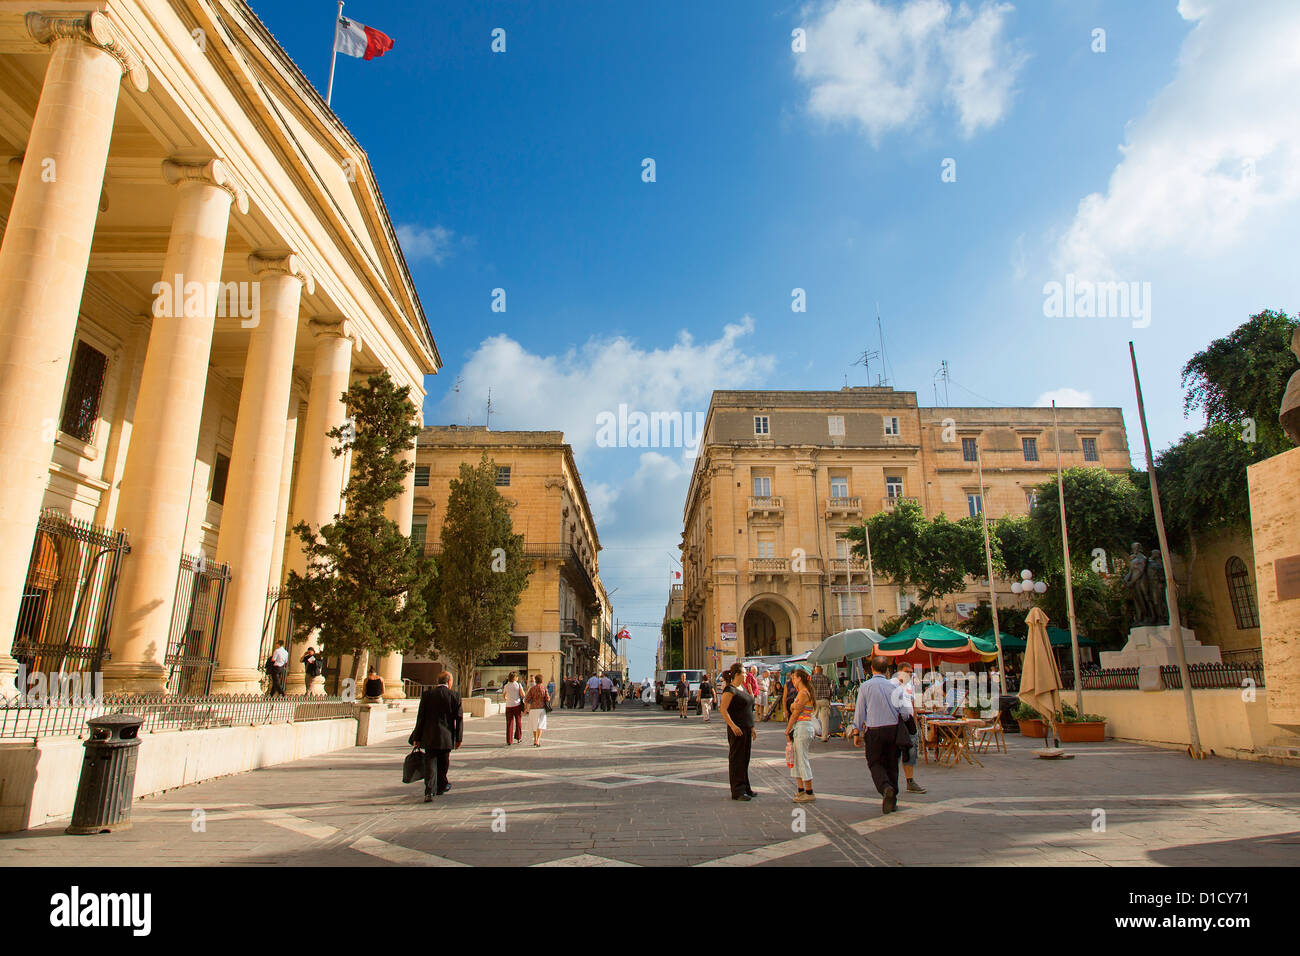 Malta, Street scene in Valletta Stock Photo